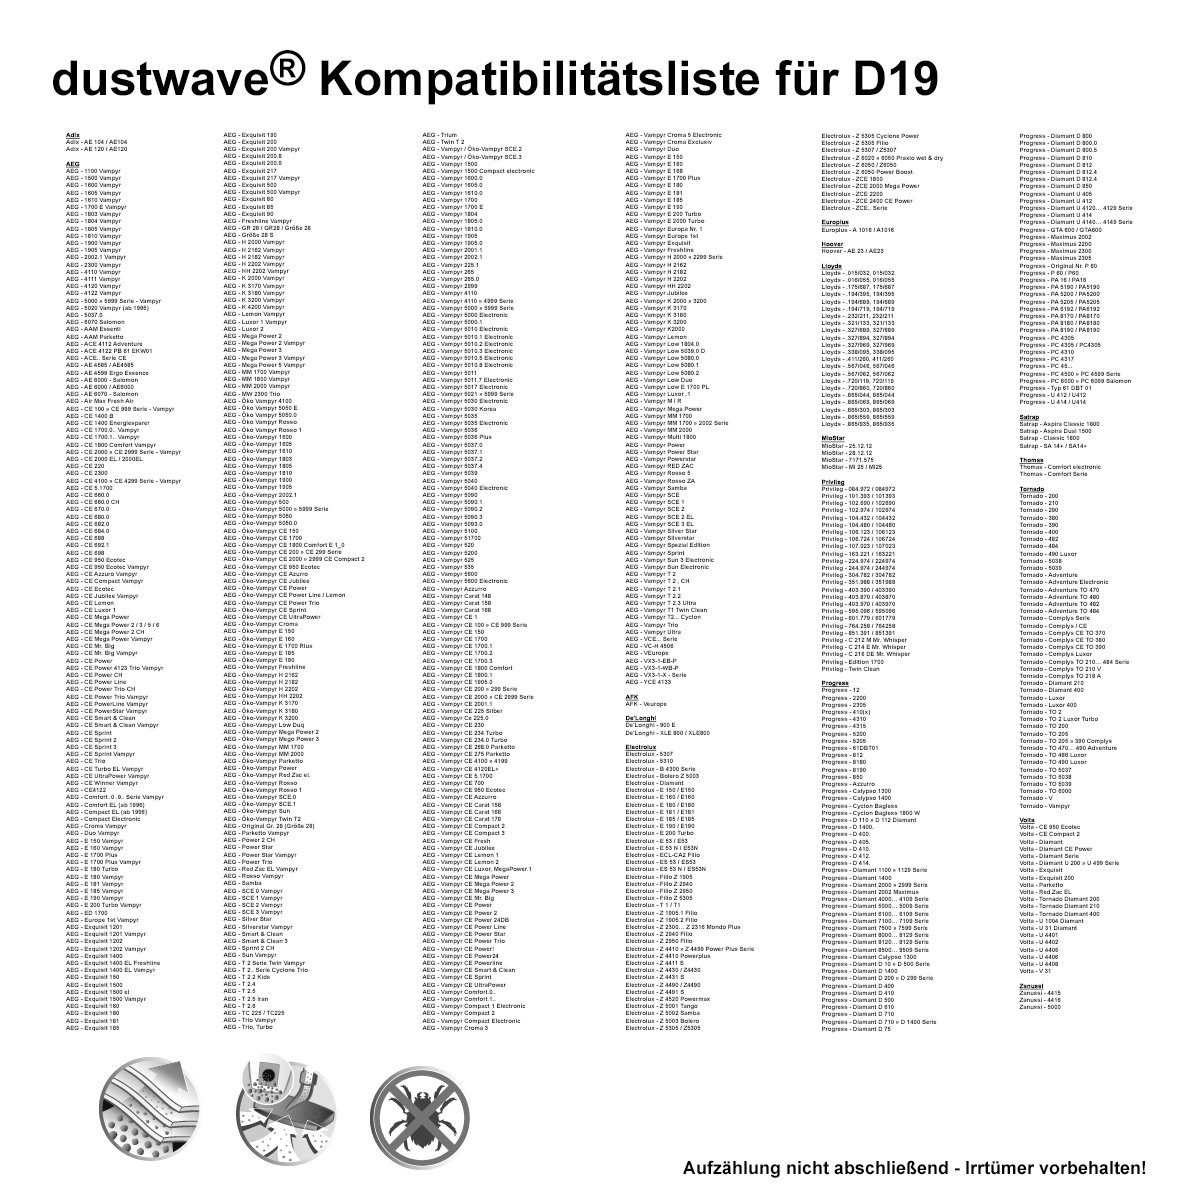 (ca. AE / für zuschneidbar) 120 - Adix 120 / 1 - + Test-Set, Staubsaugerbeutel 1 Hepa-Filter passend 15x15cm Test-Set, Adix AE120, AE120 Standard Dustwave Staubsaugerbeutel St., 1 AE